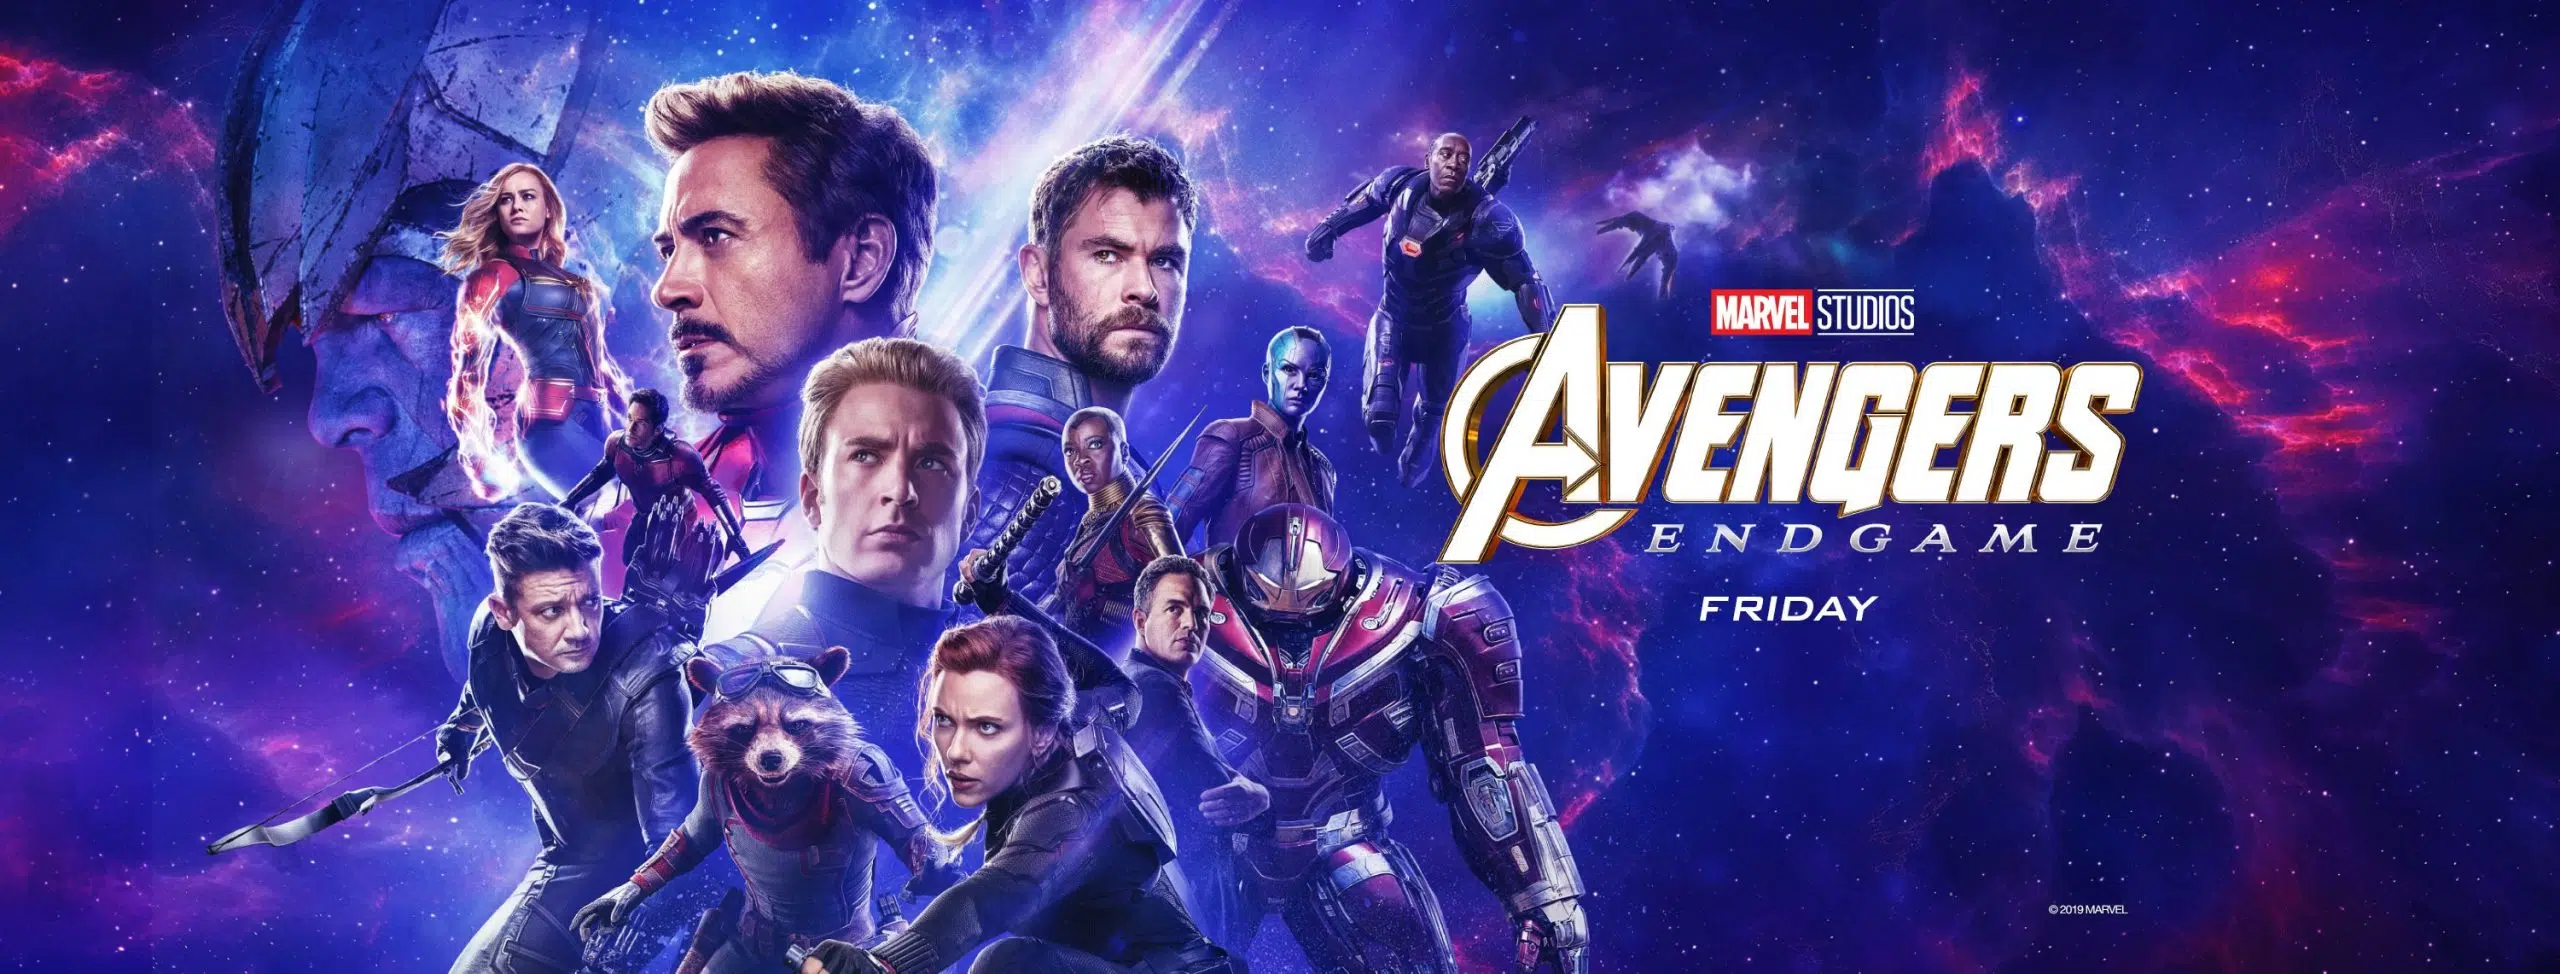 Marvel Studios’ Avengers: Endgame “Powerful”